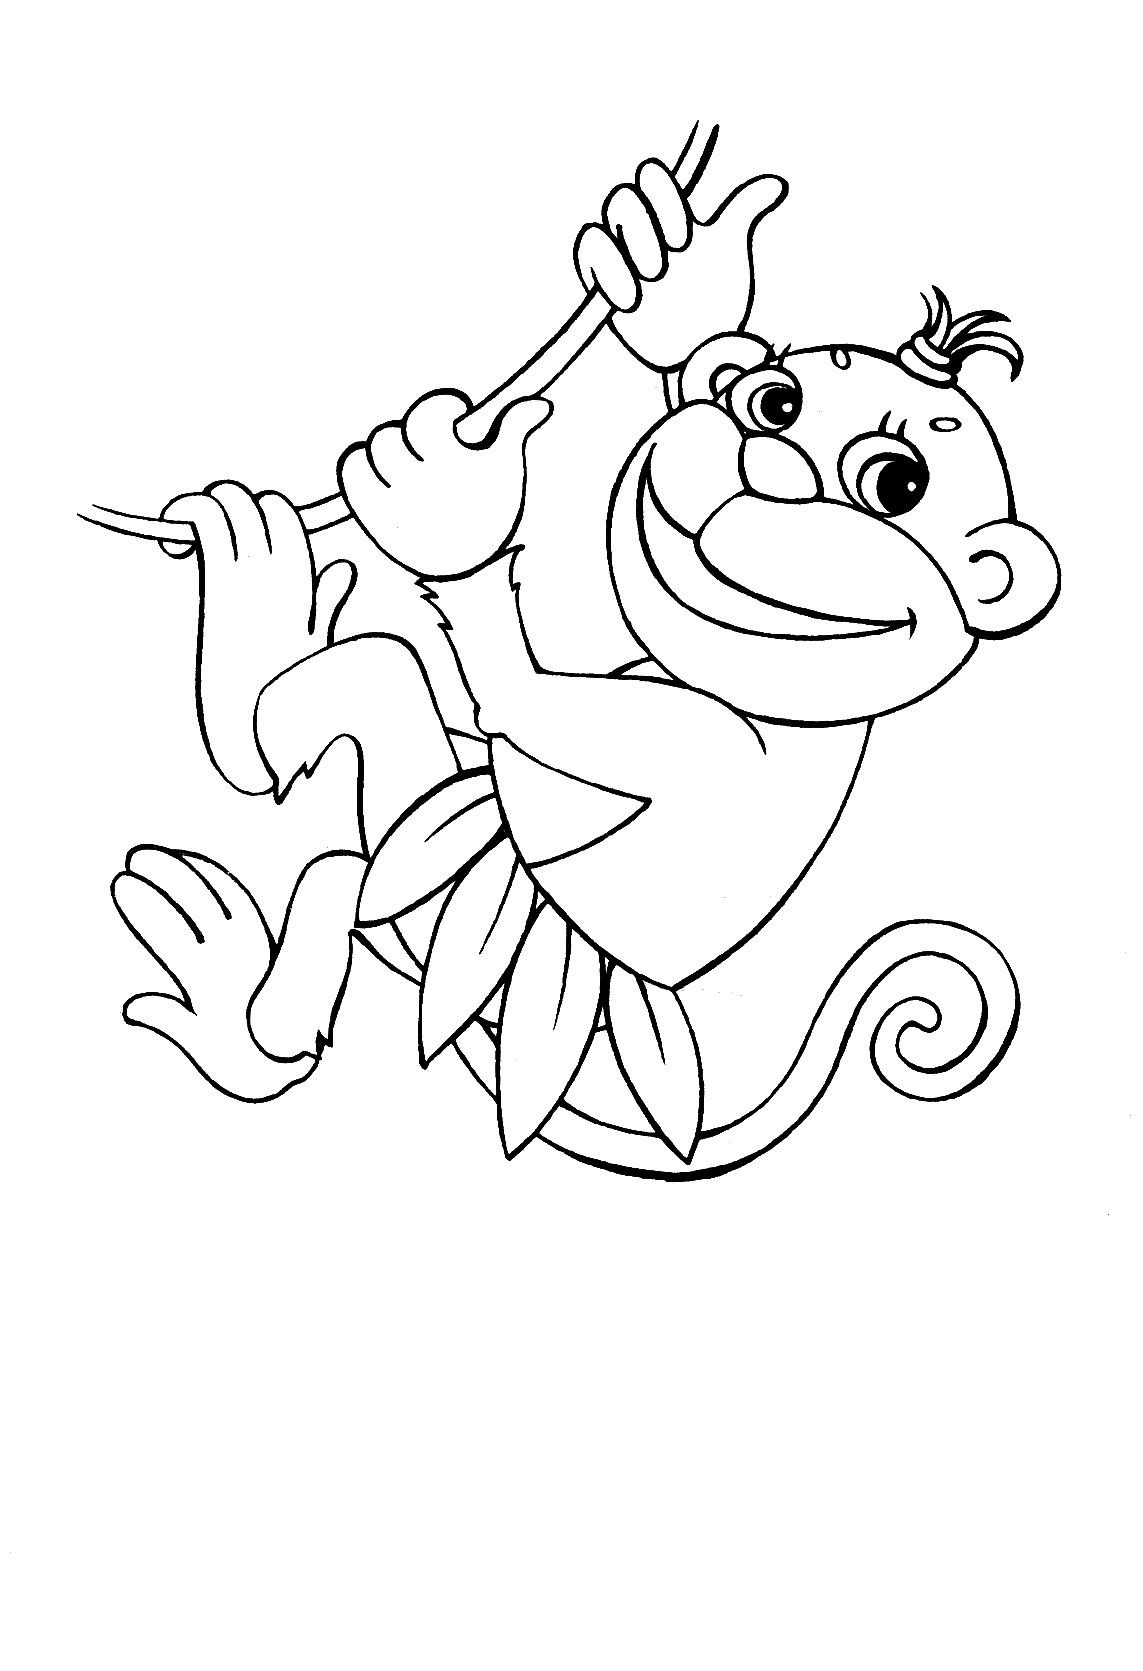 monkey coloring sheet ausmalbilder für kinder malvorlagen und malbuch monkey monkey coloring sheet 